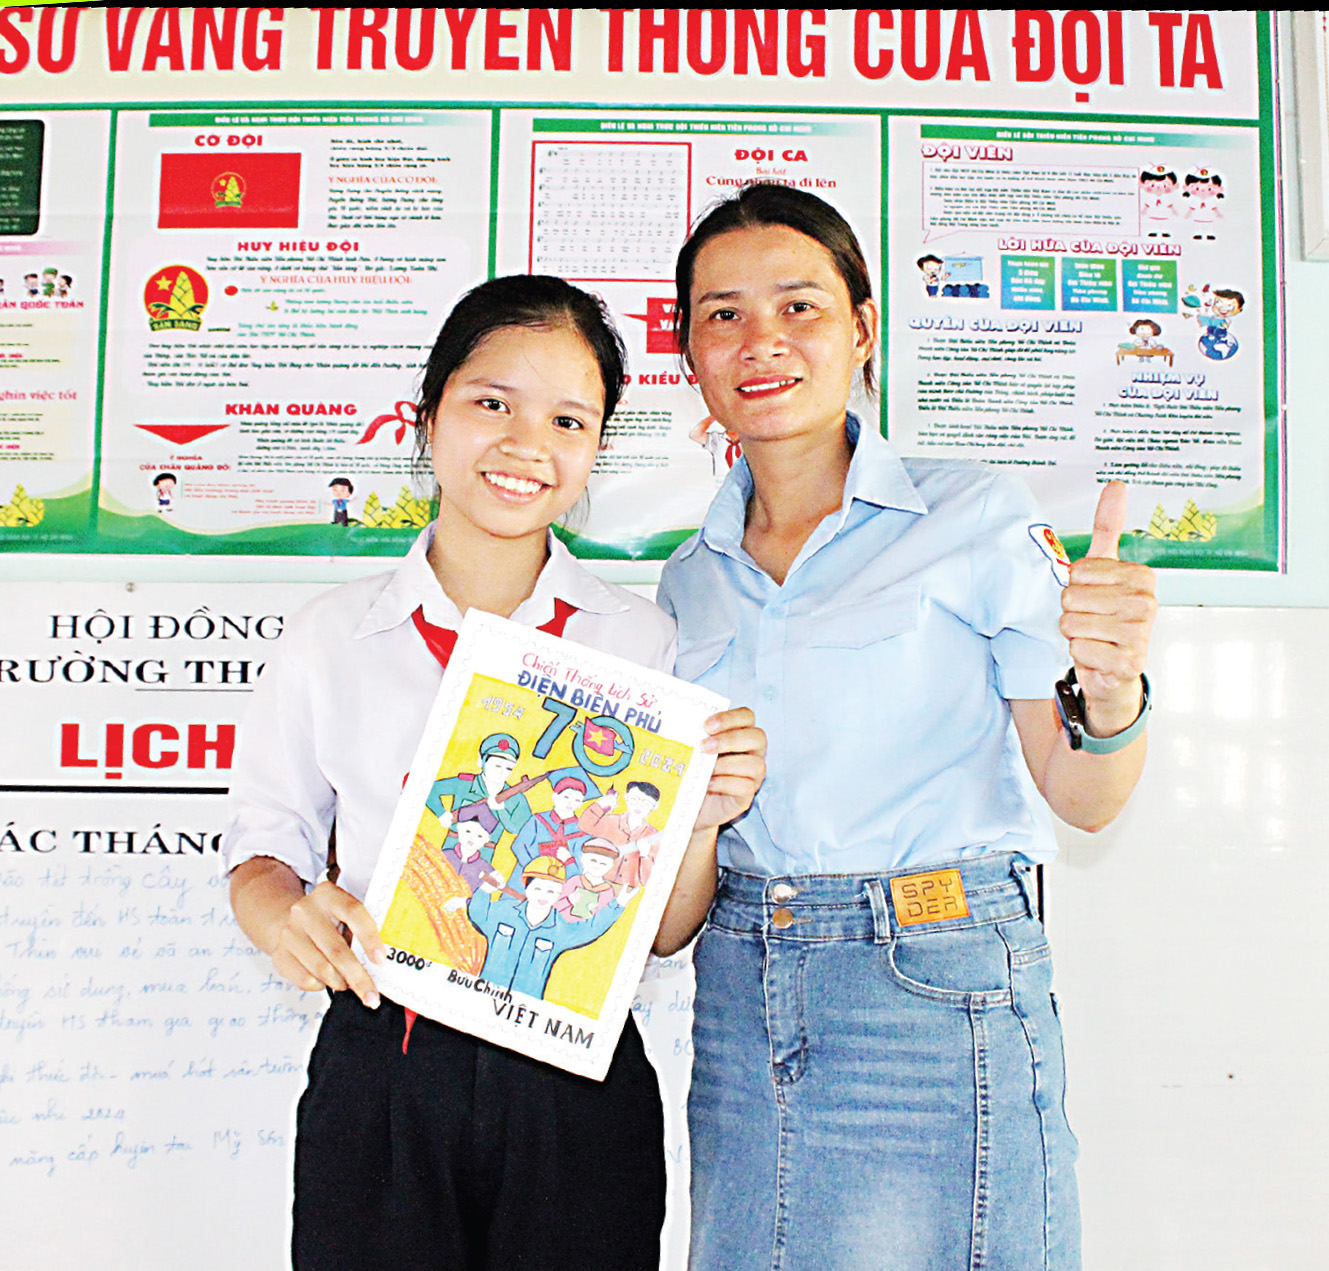 “Cô trợ lý nhỏ” của cô Tổng phụ trách Lê Thị Thanh Hòa,
trường THCS Nguyễn Khuyến, xã Duy Thu,
huyện Duy Xuyên, tỉnh Quảng Nam.